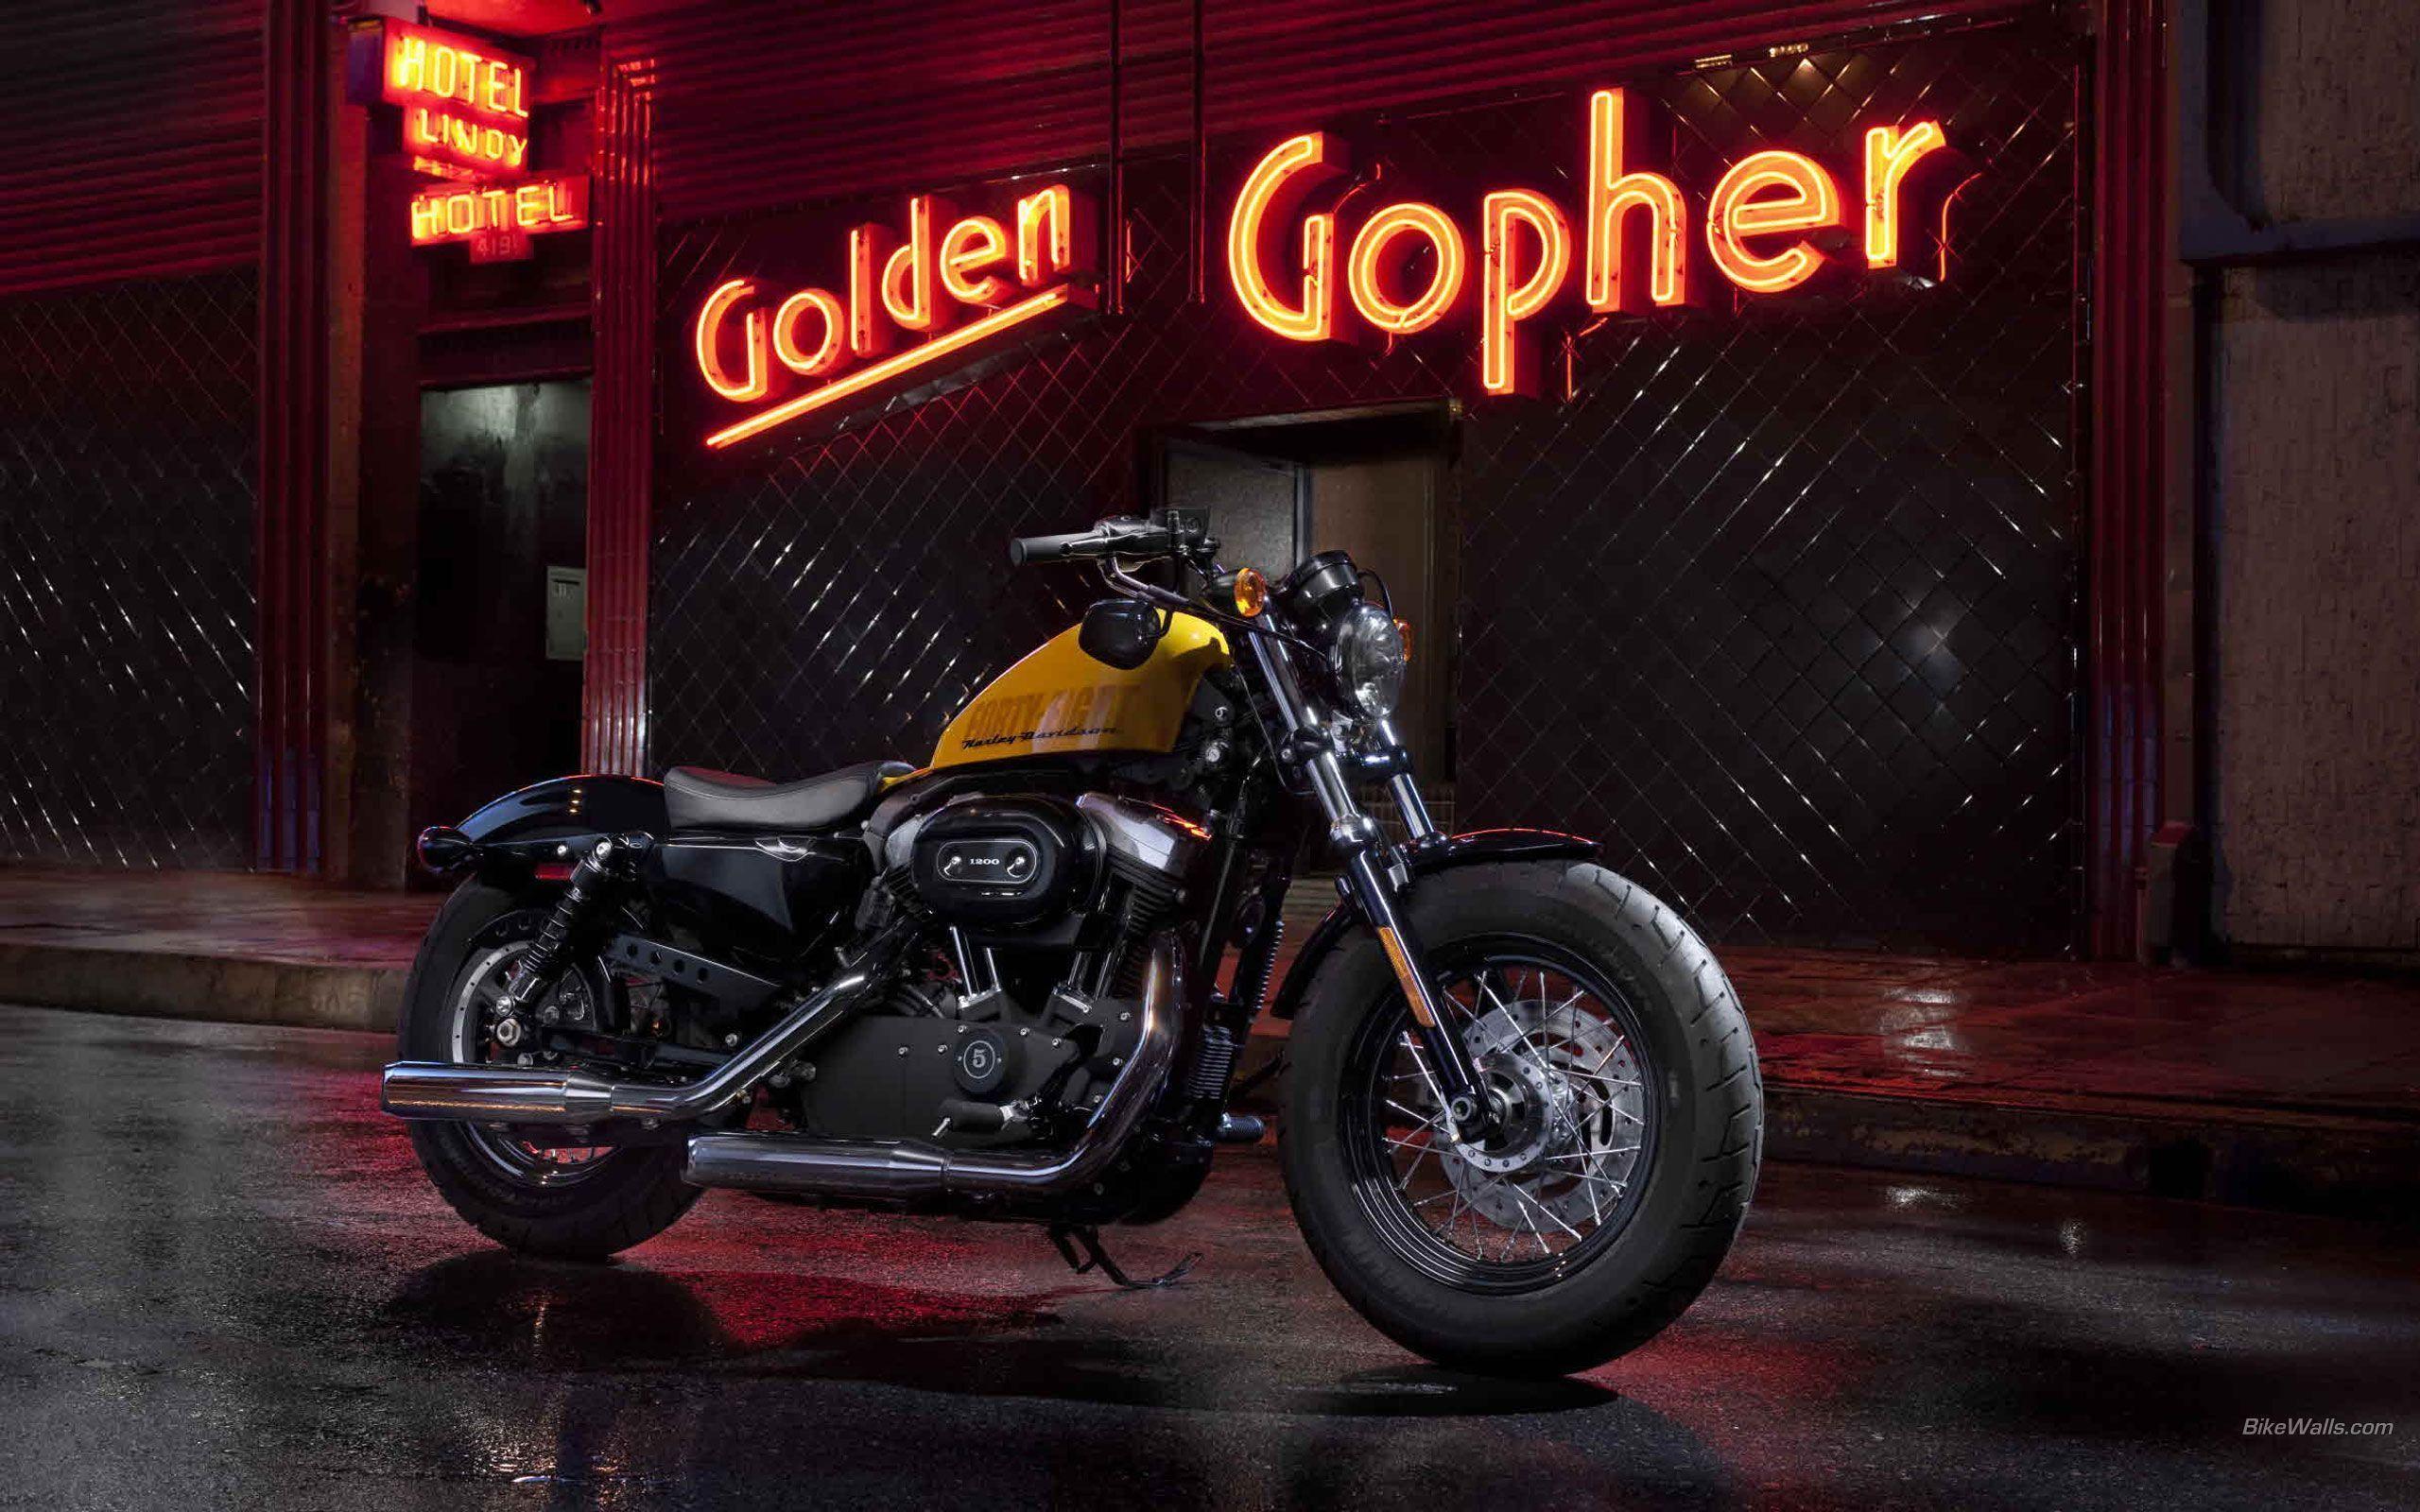 Harley Davidson Sportster 2560 X 1600 362 Kb Jpeg. Top Harley